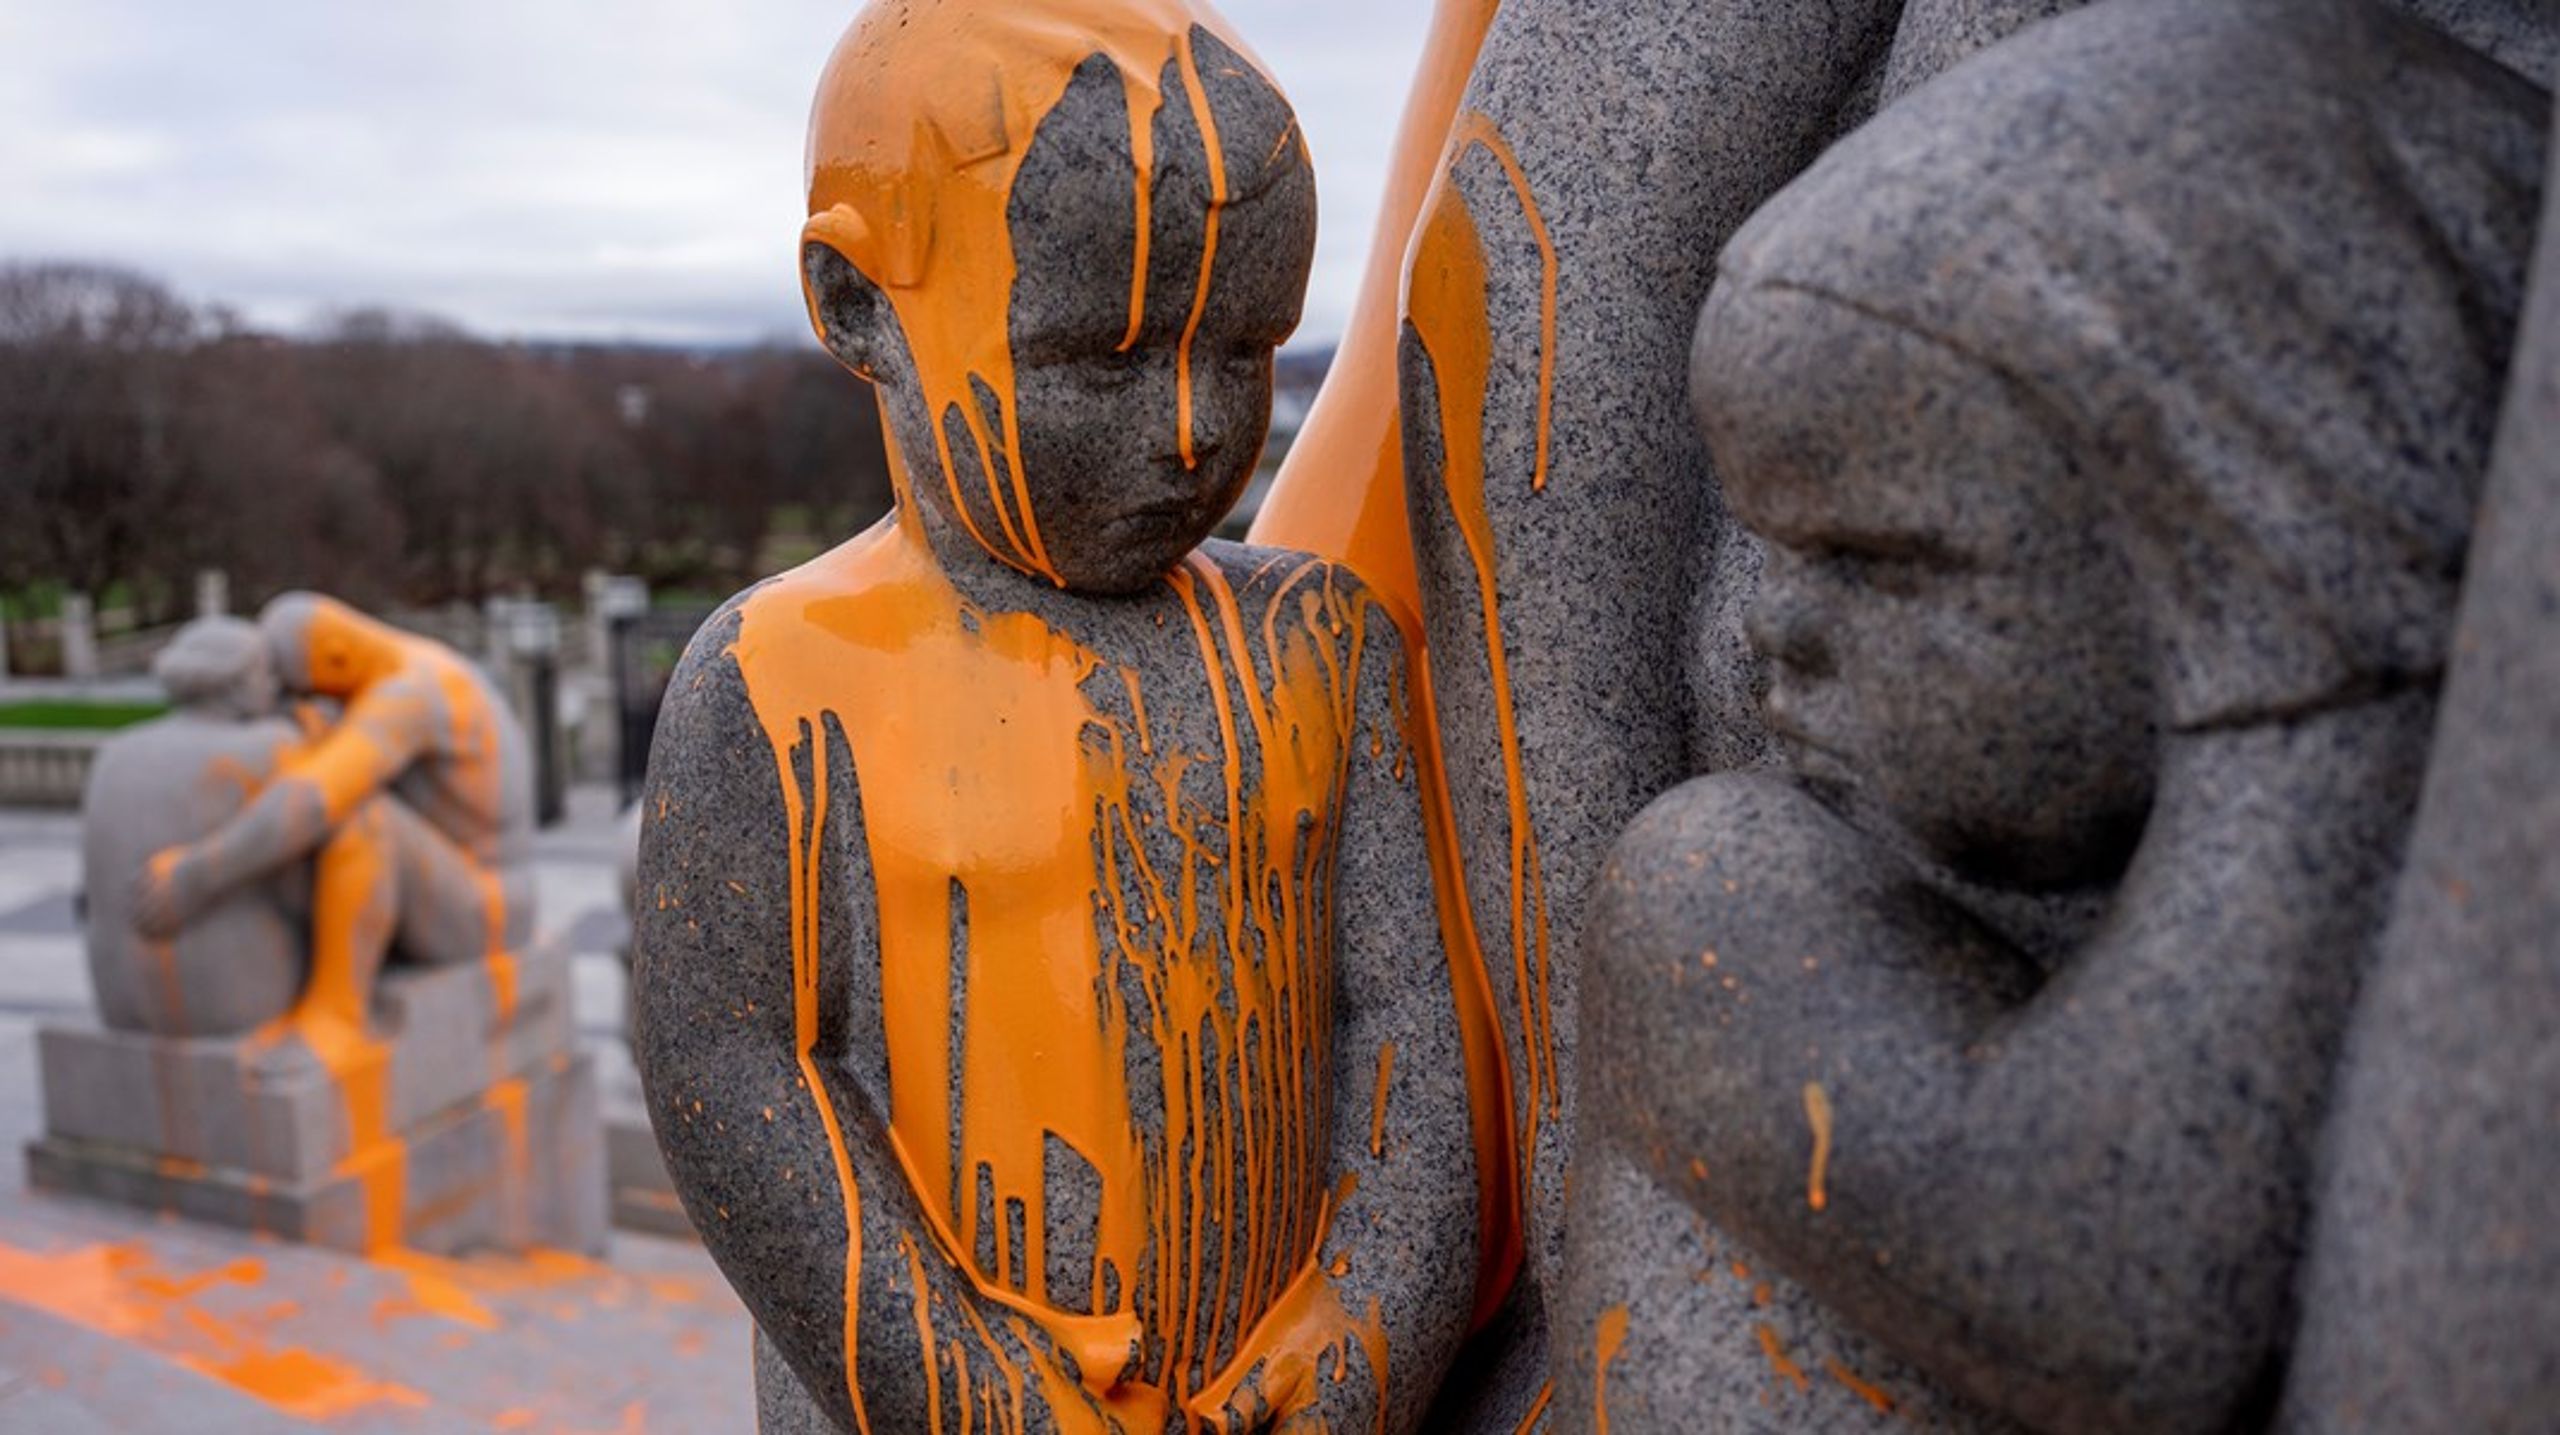 Aksjonister fra Stopp oljeletinga tilgriset Monolitten med oransje maling tidligere i november. Spaltist Ane Breivik mener taktikken om mest mulig medieoppmerksomhet gjennom slike stunt ikke nødvendigvis er den beste for å stanse oljeletingen.